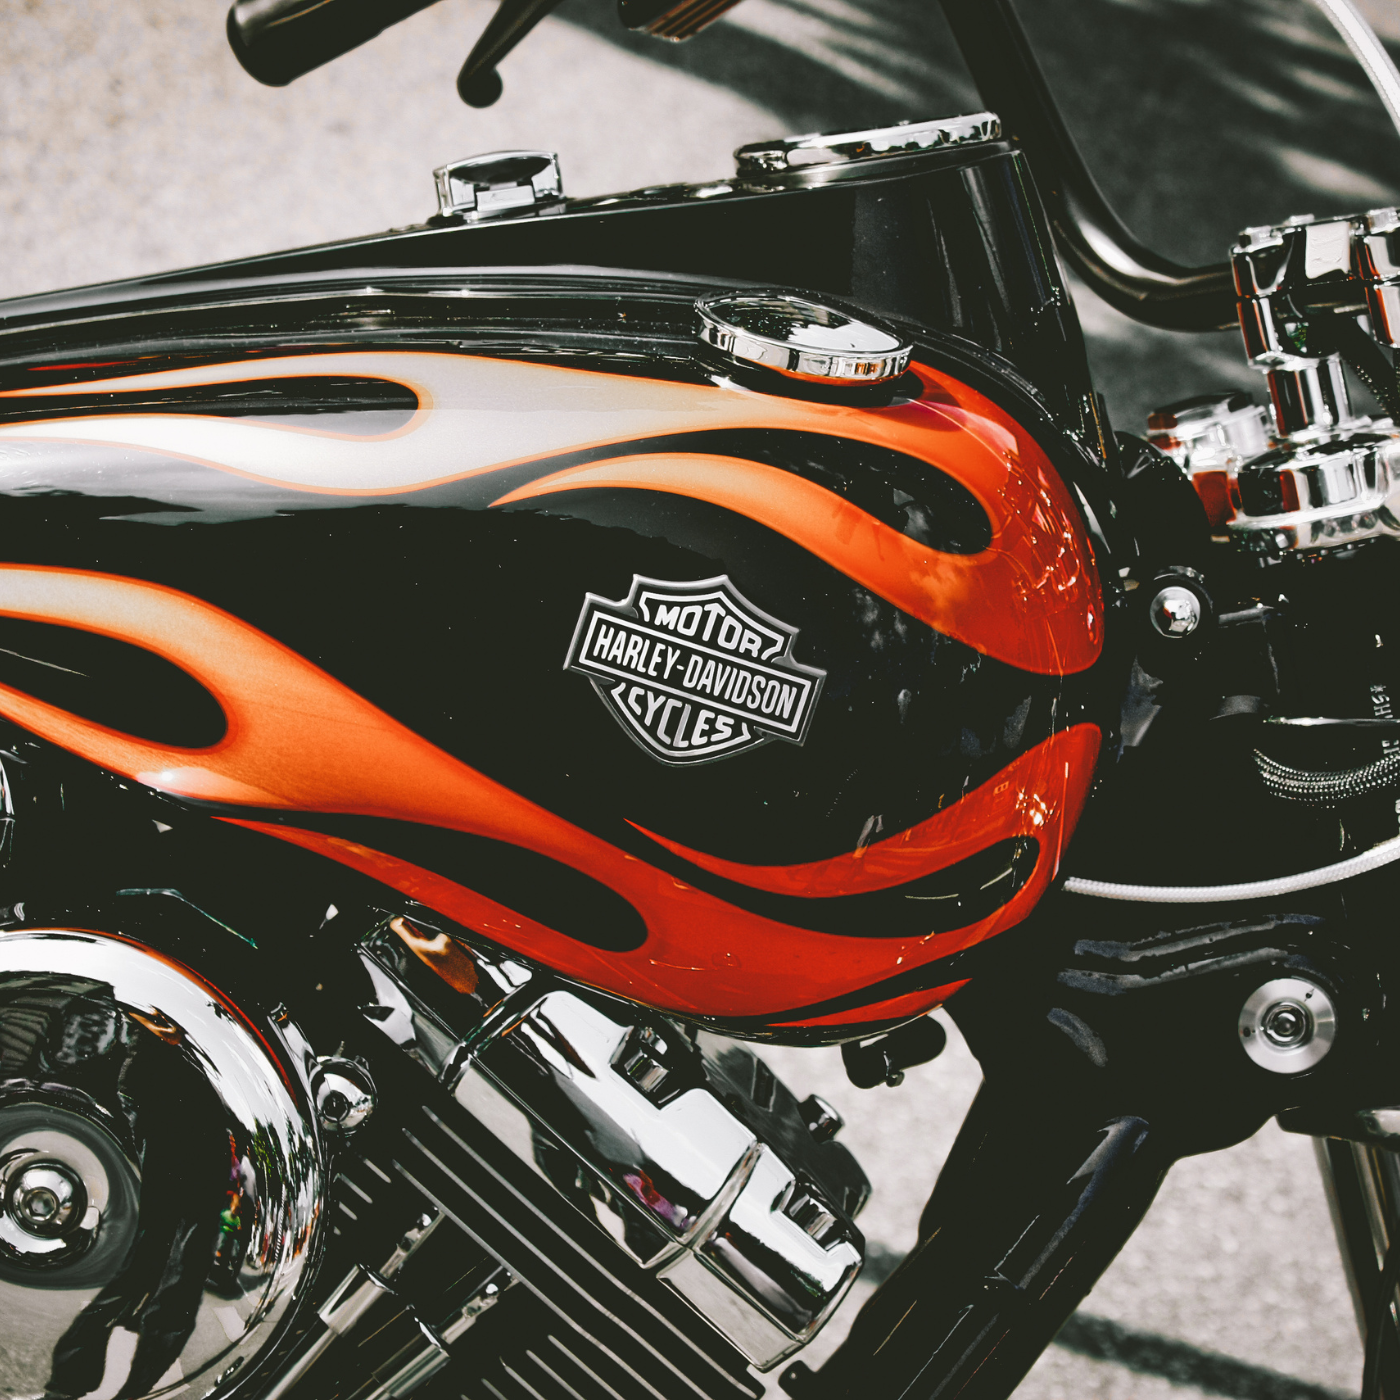 Ceramic coating for Harley Davidson